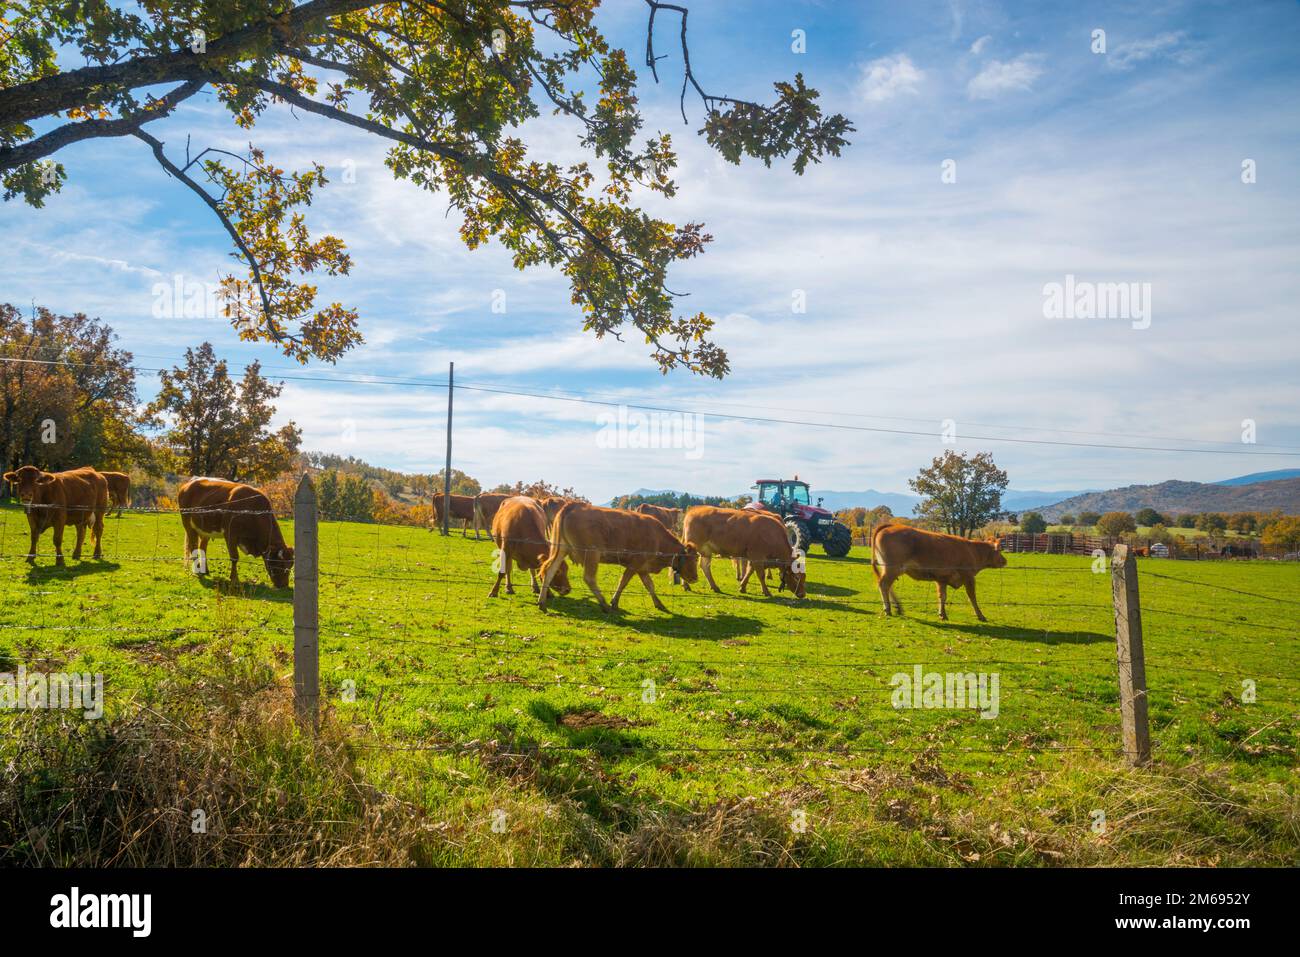 Cows in a farm. Montejo de la Sierra, Madrid province, Spain. Stock Photo